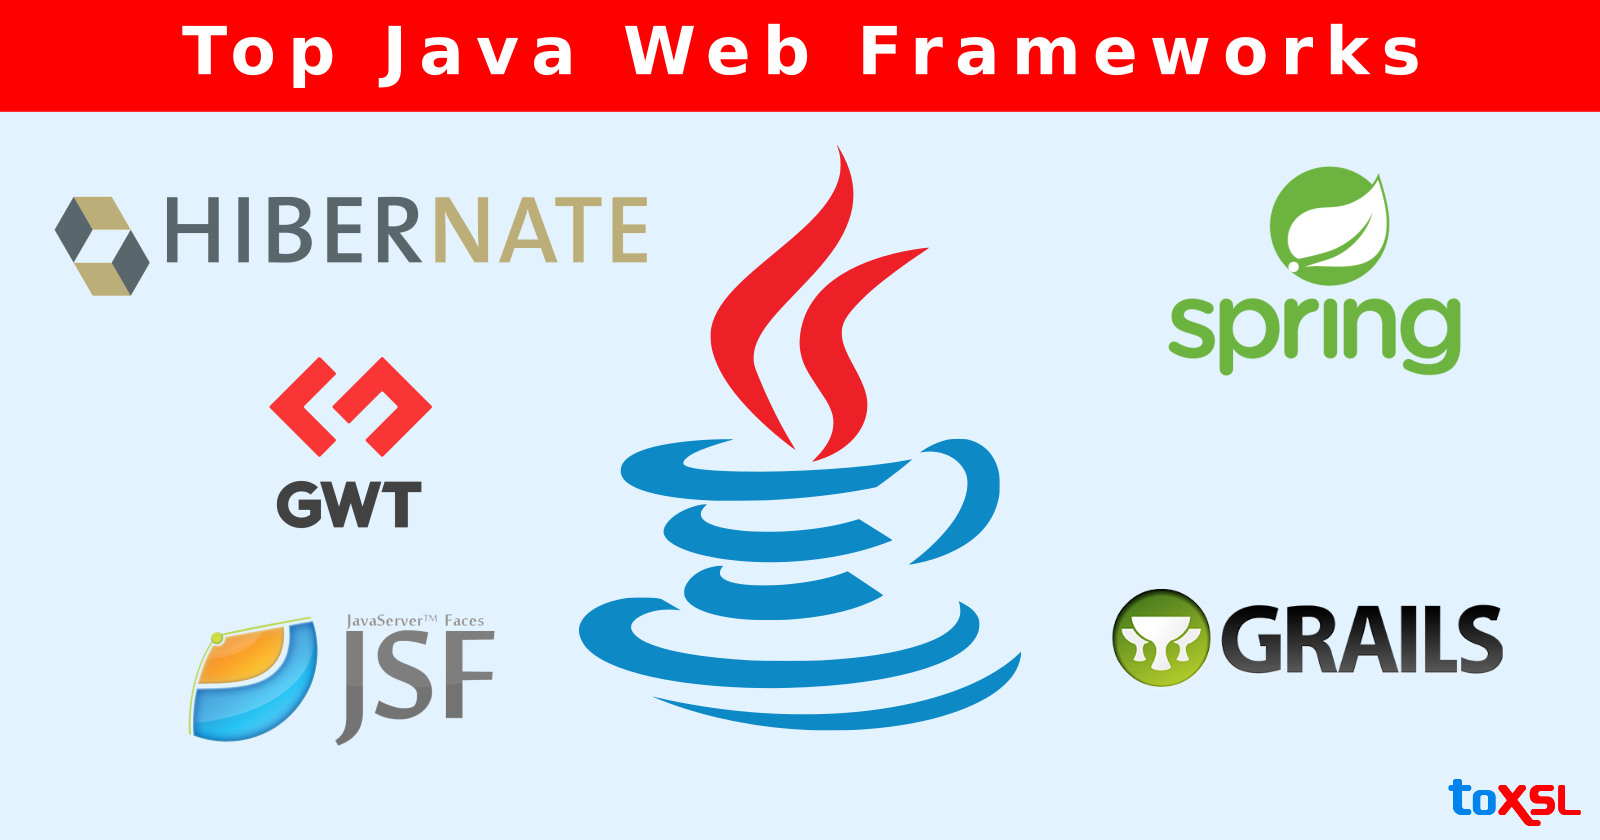 Top Java Web Frameworks for 2018